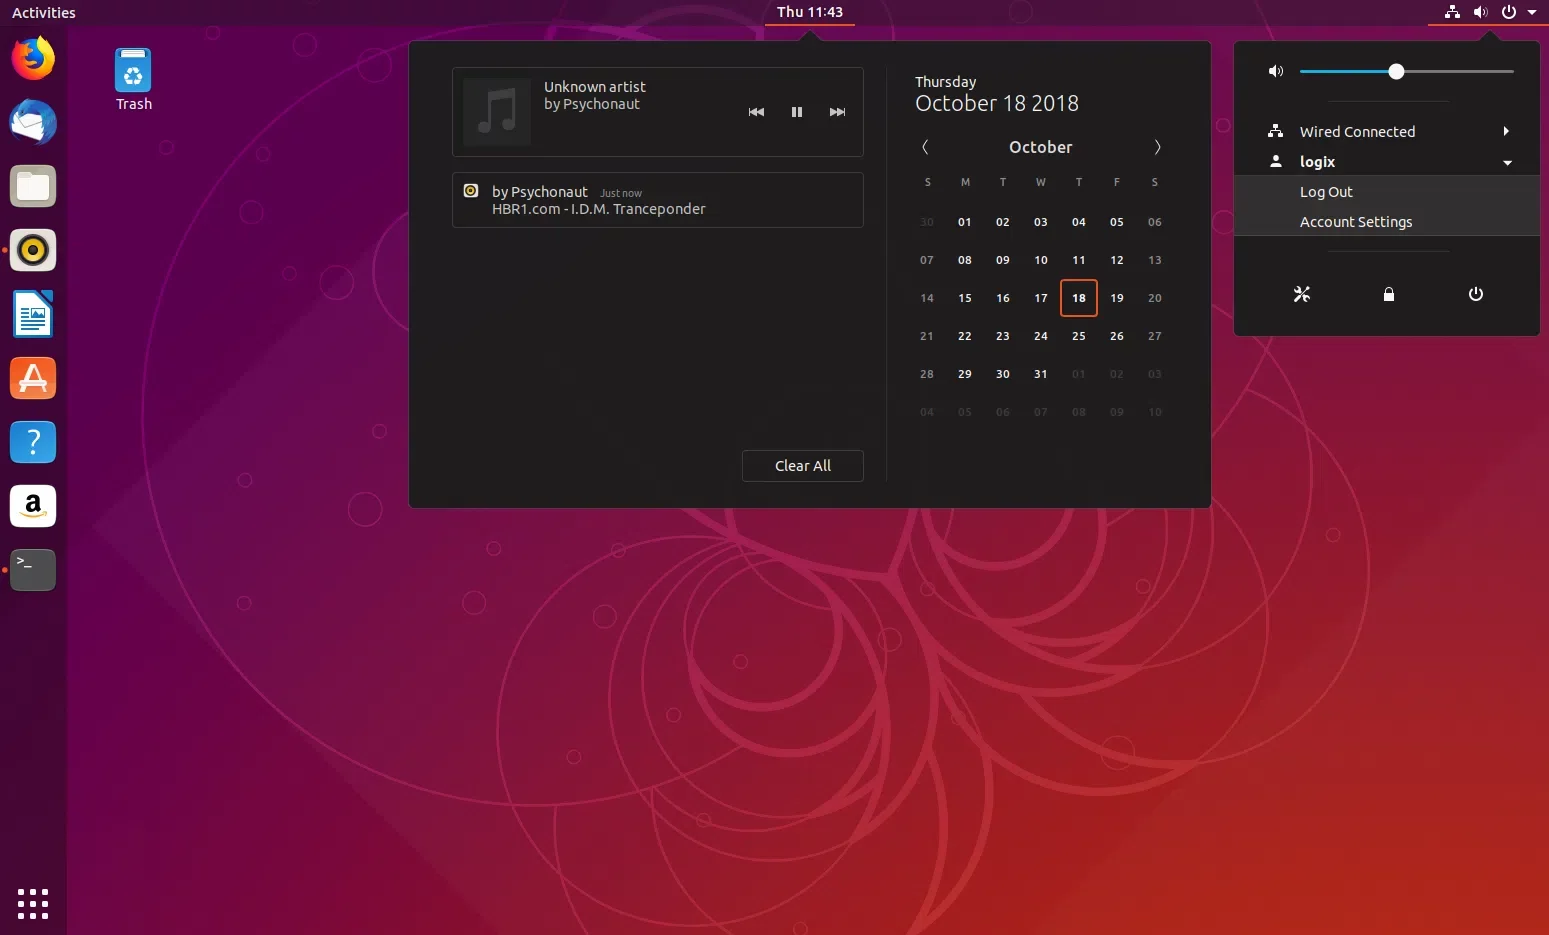 Captura de tela dos menus do tema do Ubuntu 18.10 Yaru Gnome Shell